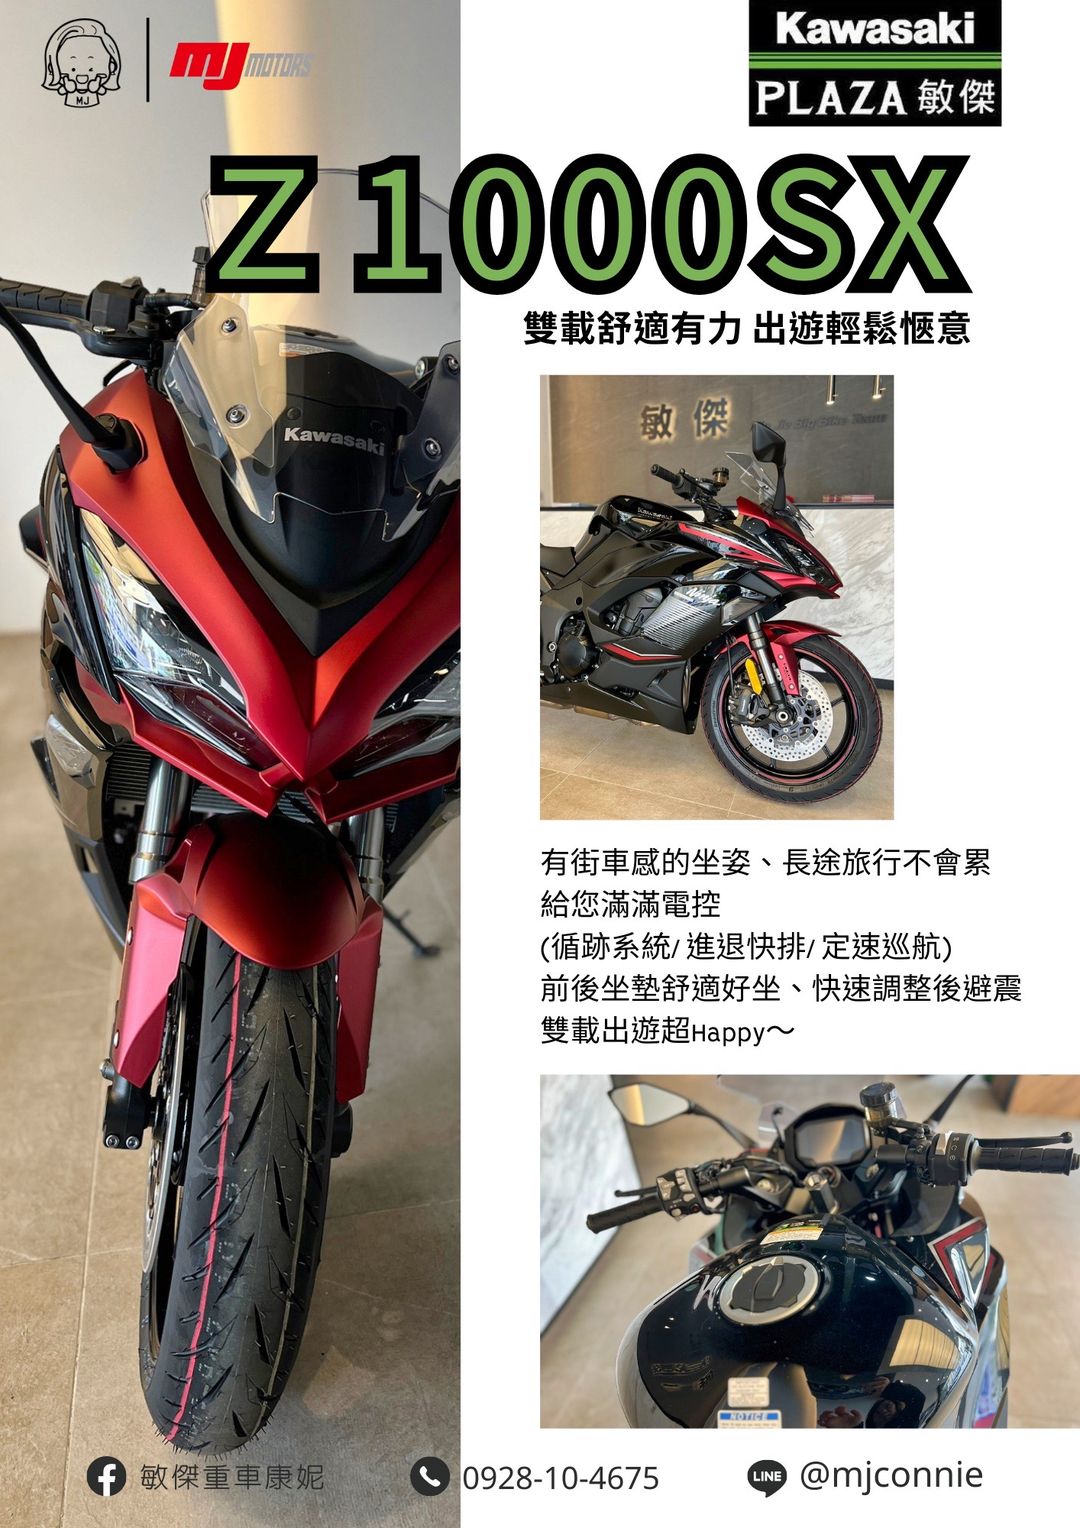 【敏傑車業資深銷售專員 康妮 Connie】KAWASAKI NINJA1000 - 「Webike-摩托車市」 『敏傑康妮』休旅好車~ 忍千首選!!! Kawasaki Z1000SX 就是要給您最佳體驗^^ 月繳免頭款 $9998